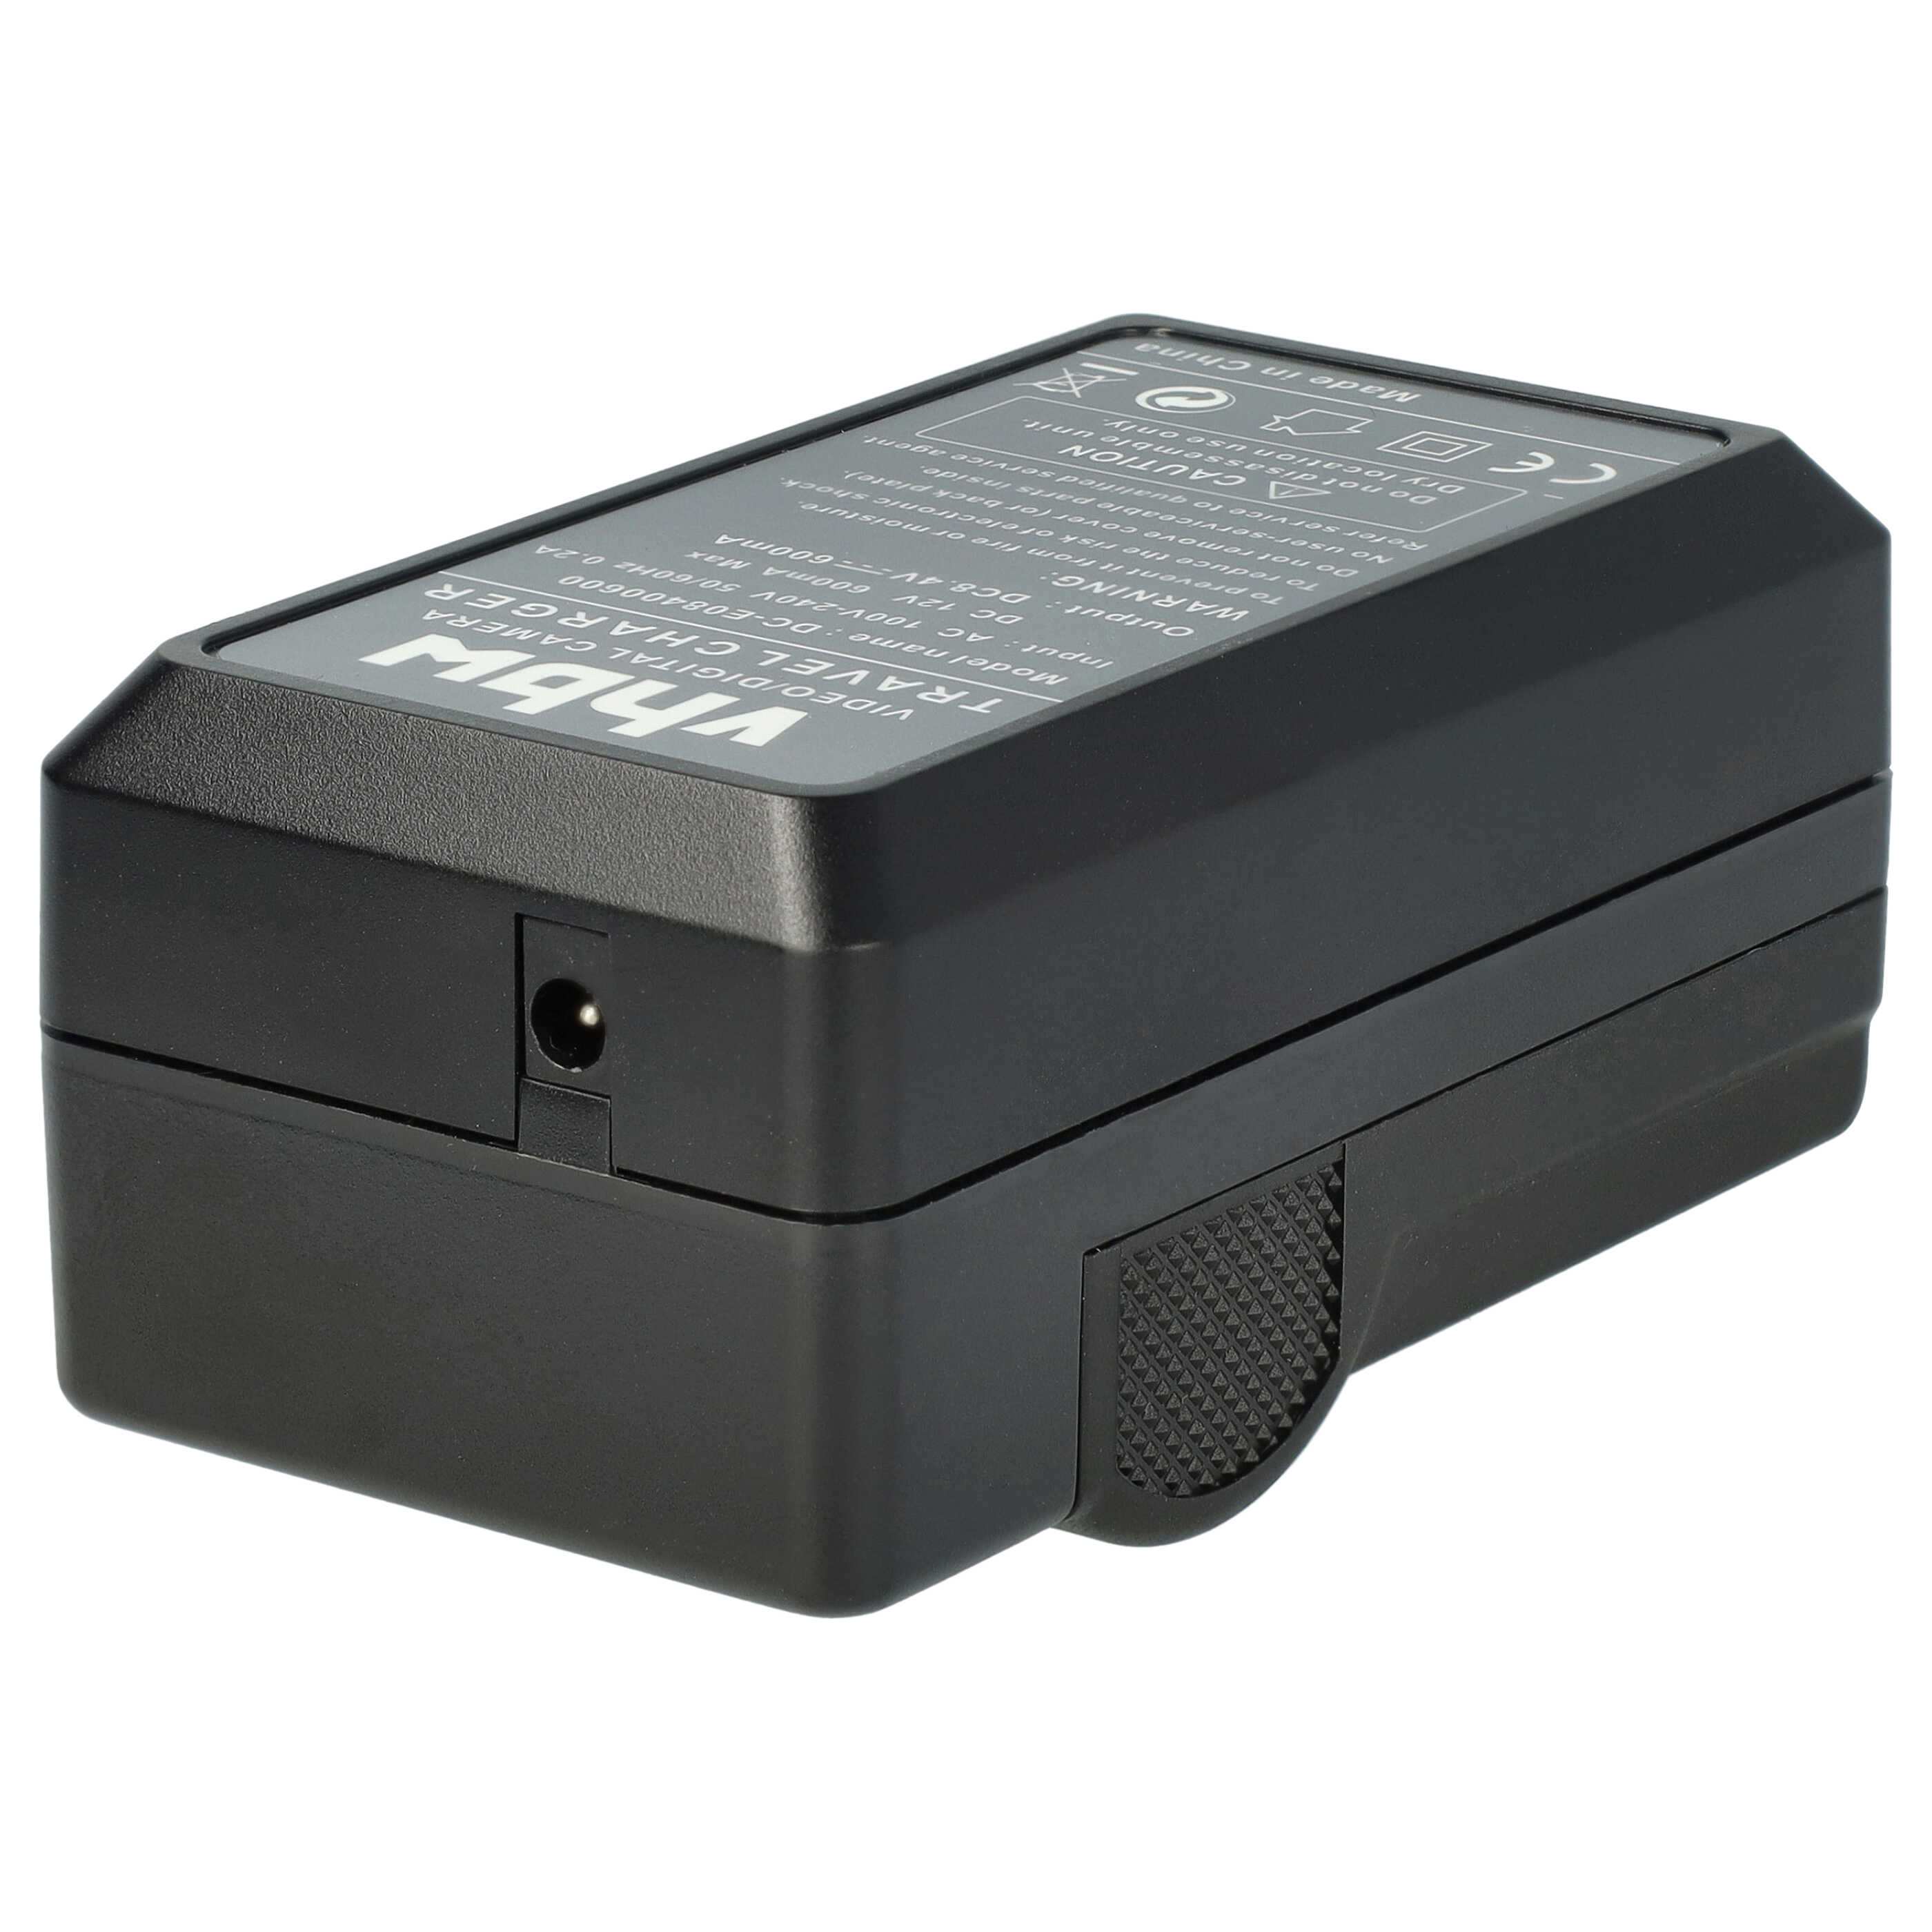 Akku Ladegerät passend für Lumix DMC-G3K Kamera u.a. - 0,6 A, 8,4 V